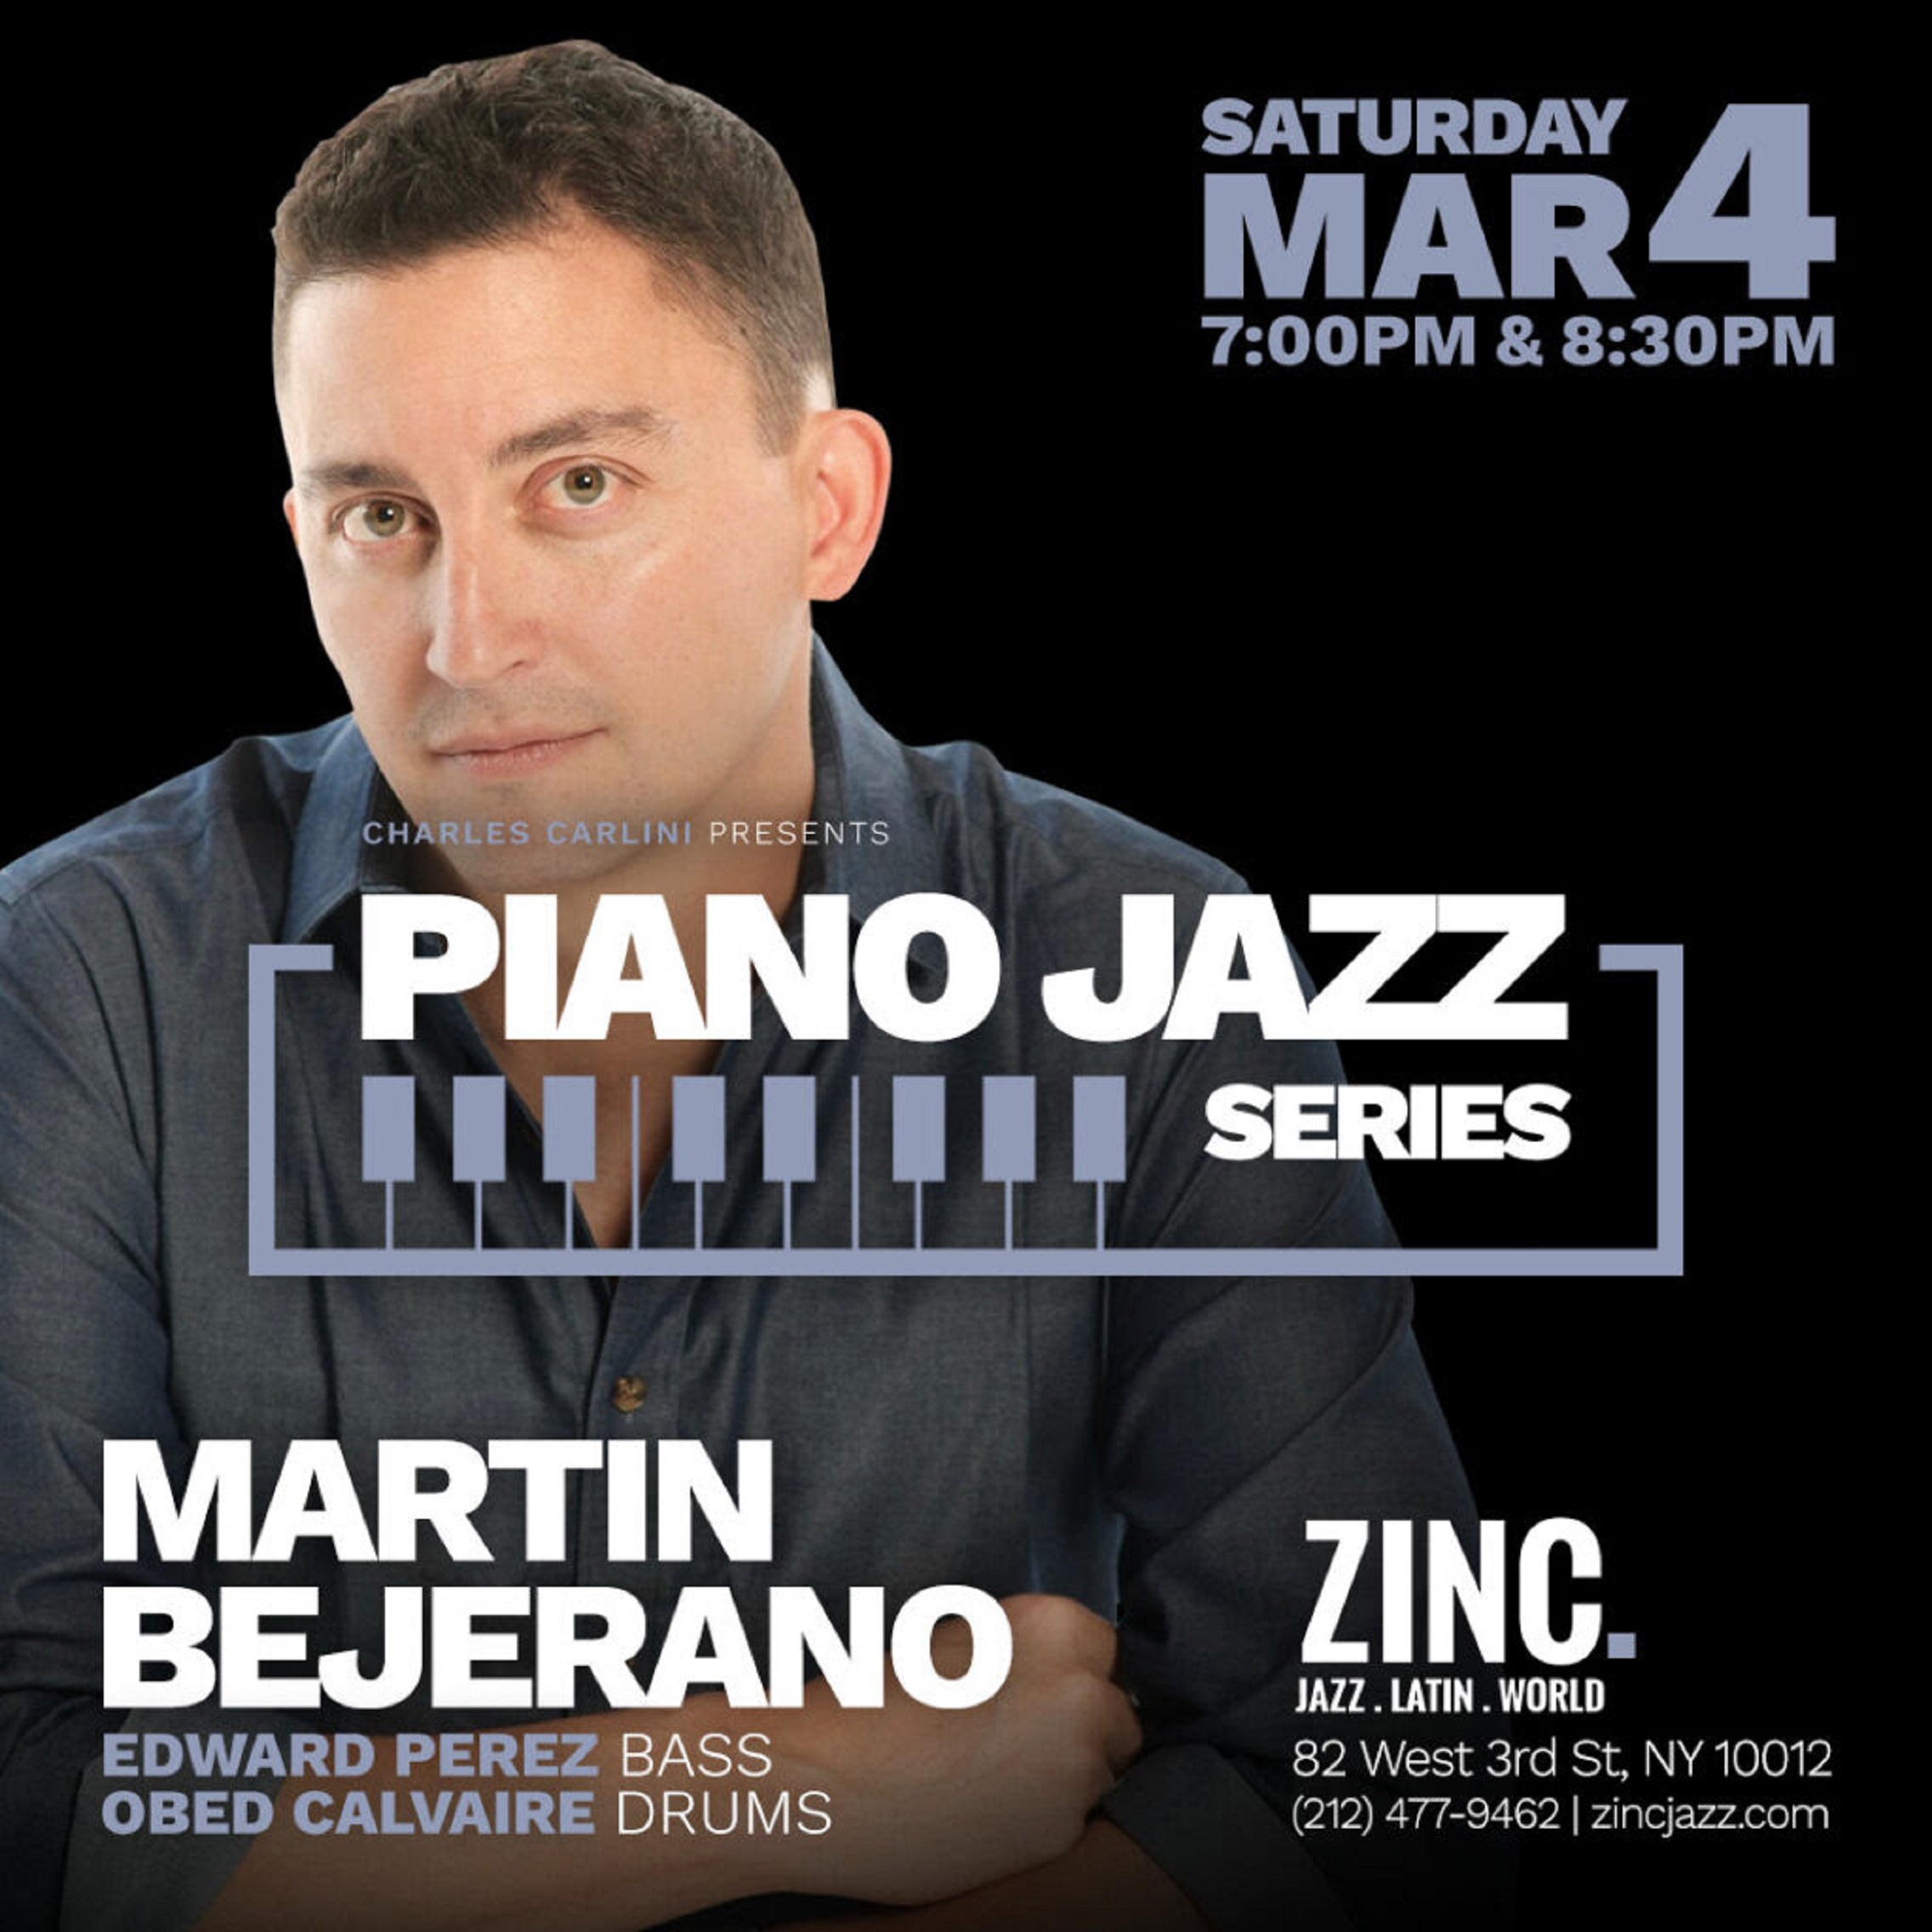 Catch GRAMMY-nominated Jazz Pianist Martin Bejerano at Zinc